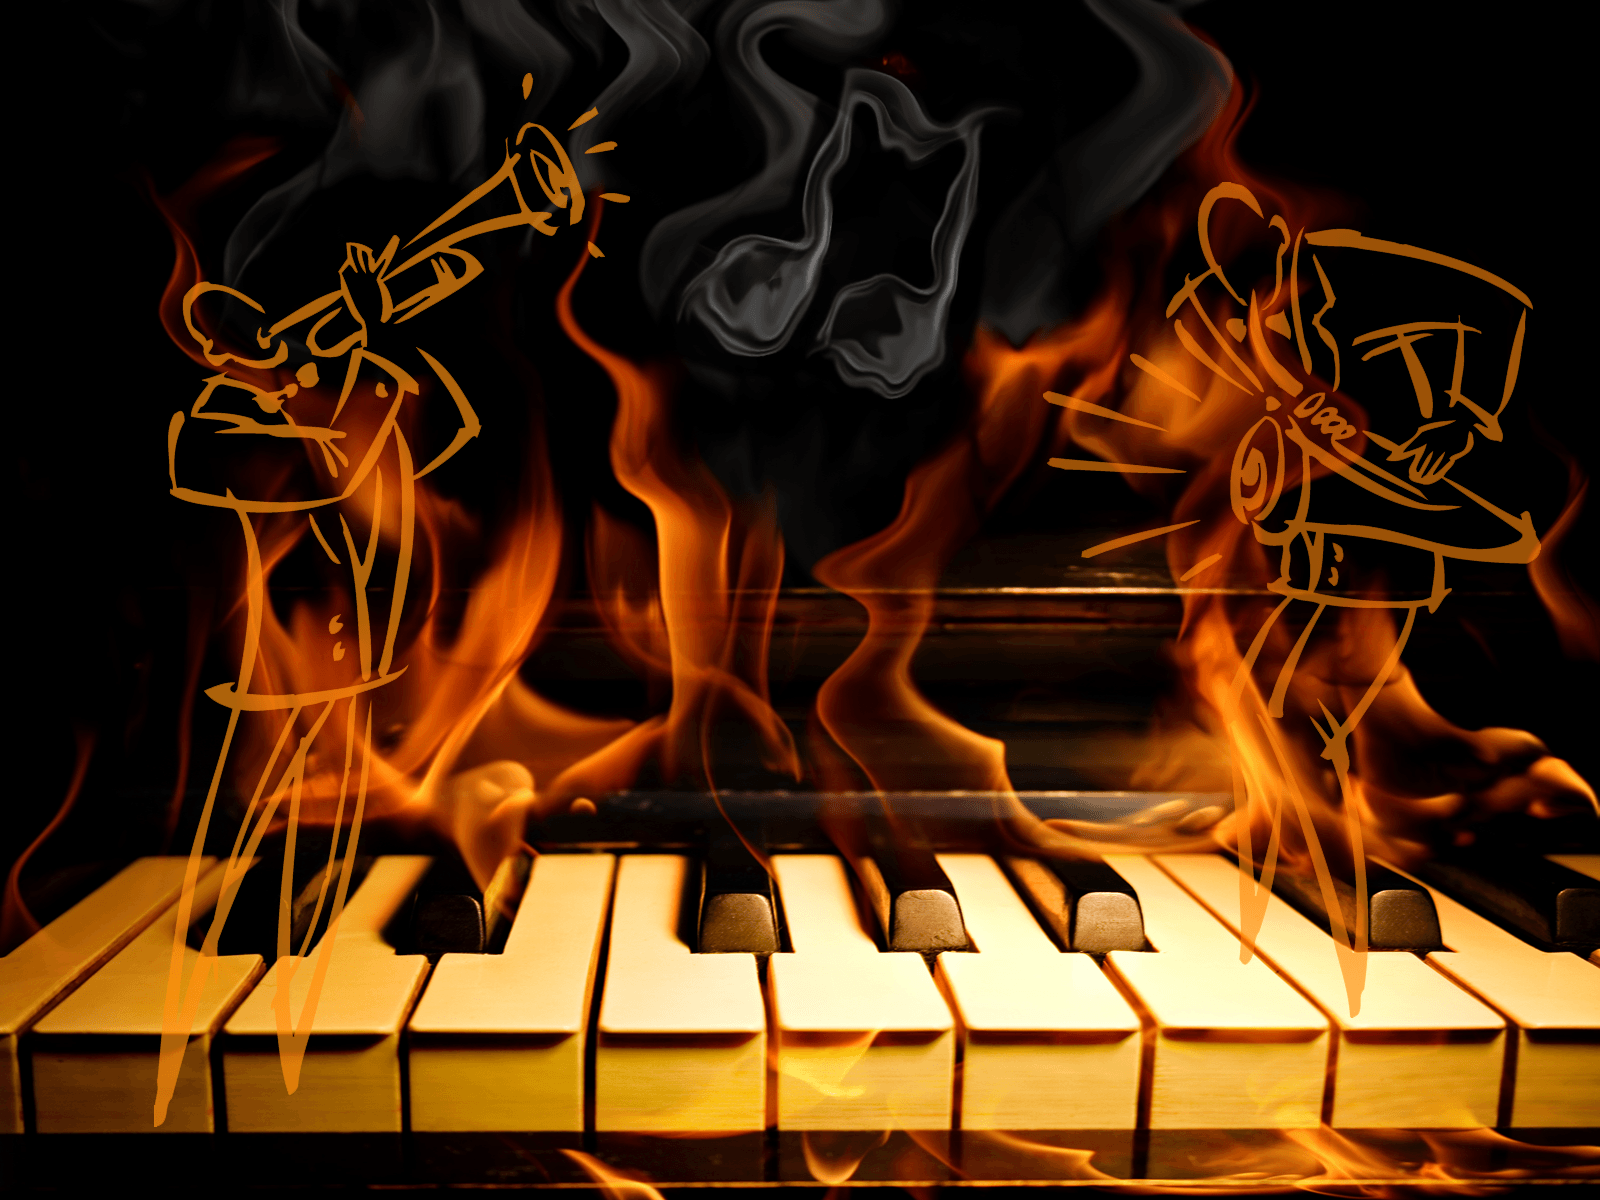 Continue comemorando o Dia do Jazz na Pedra do Sal. Jazz, Pianos